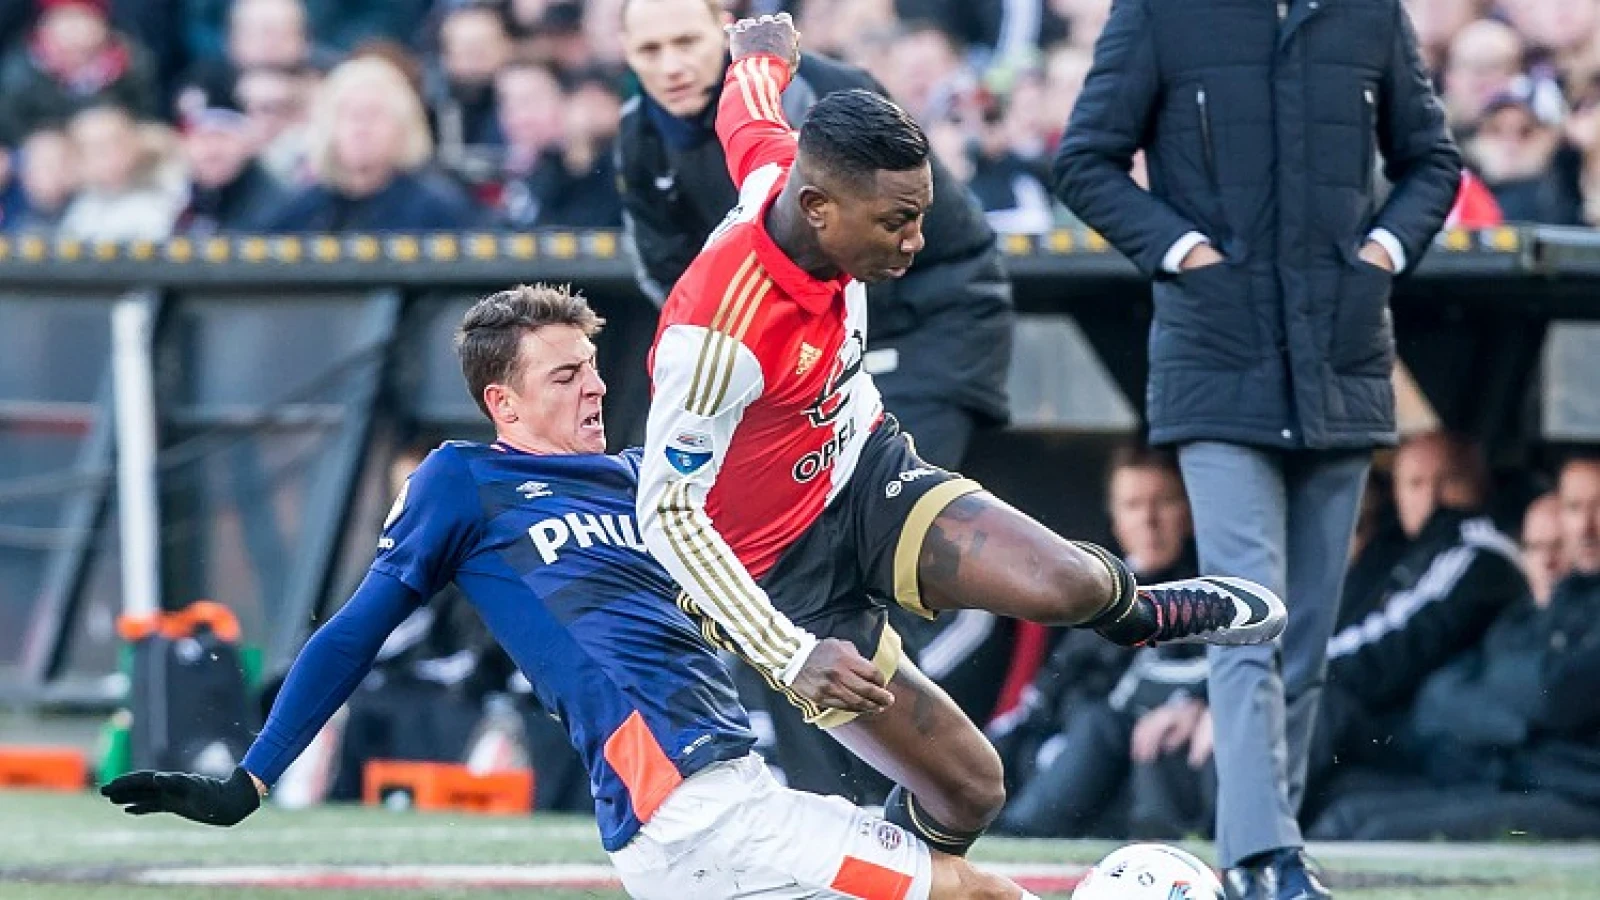 Elia hoopt dat Kazim snel weer speelt: 'Bij Feyenoord of ergens anders'